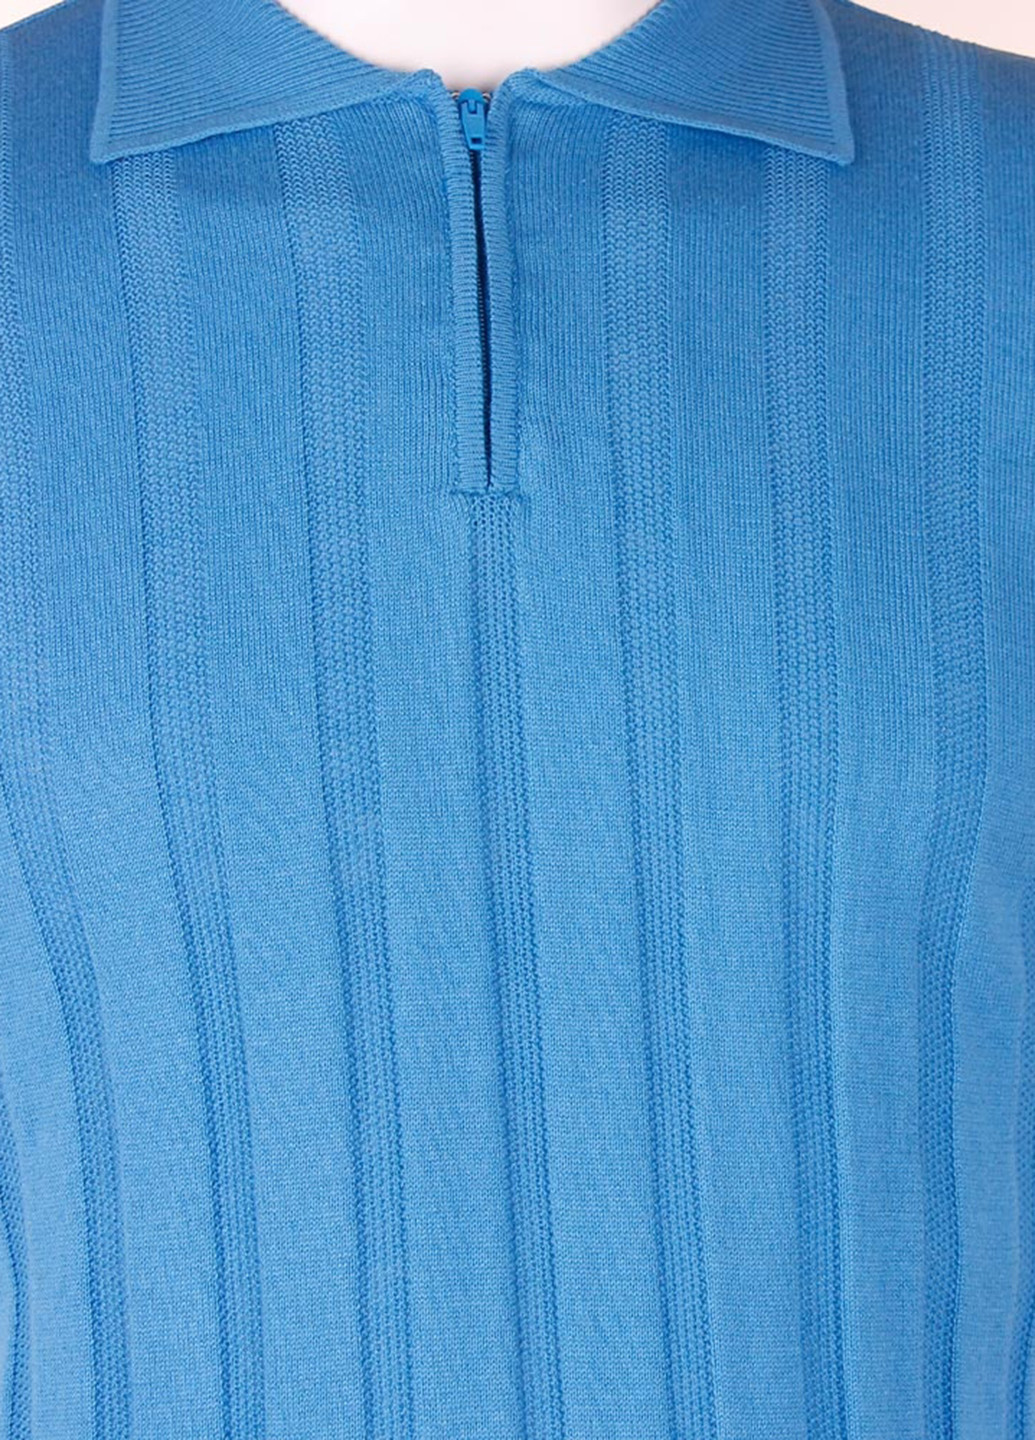 Голубой футболка-поло для мужчин VD One однотонная